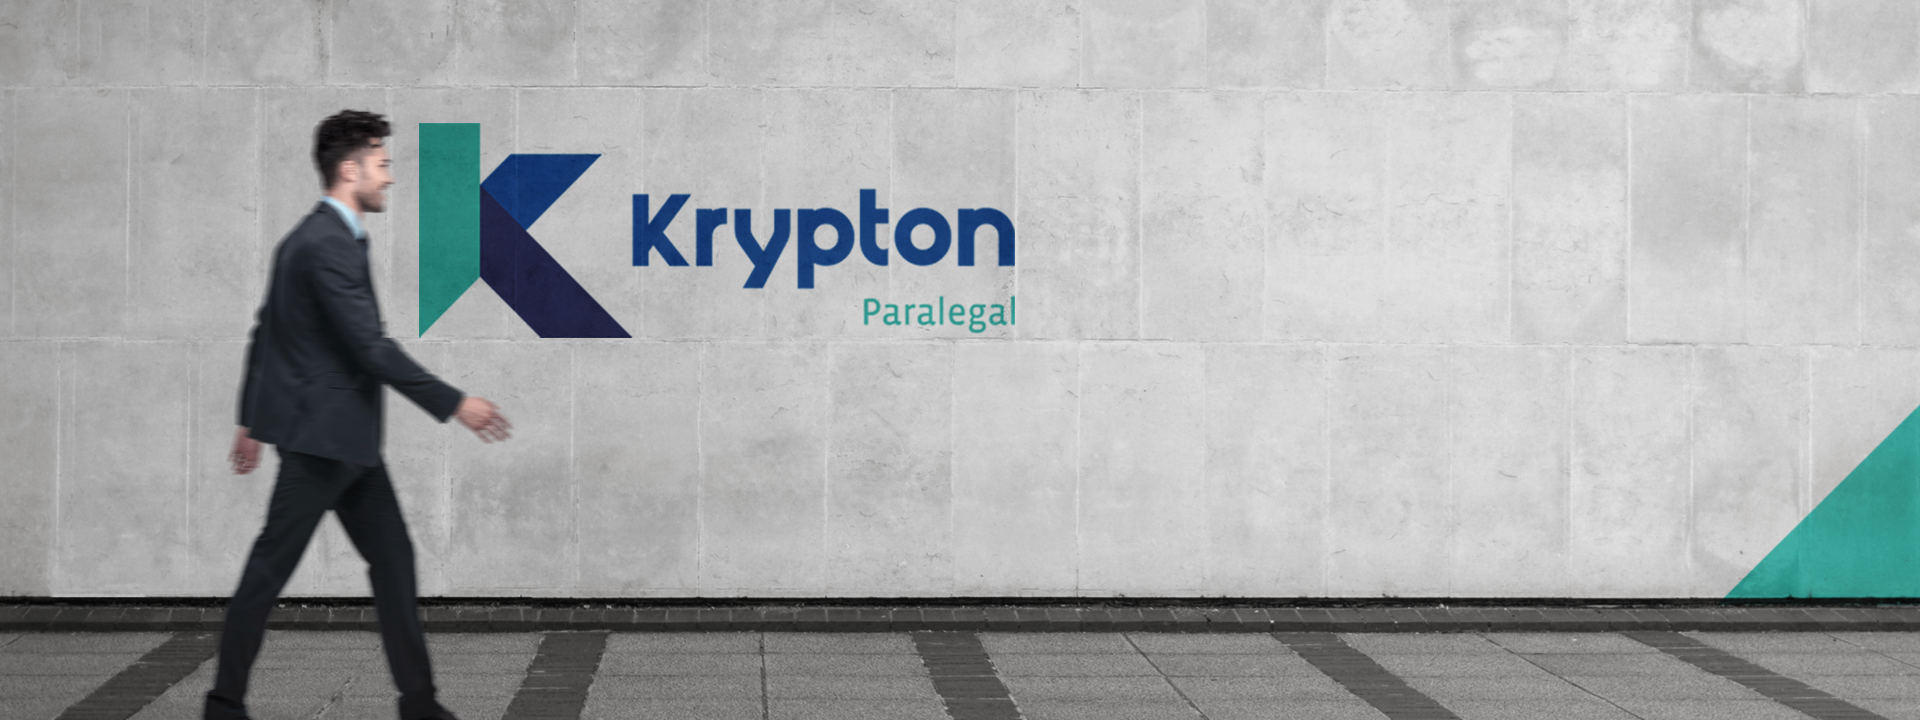 Conheça a Krypton Paralegal: menos burocracia e mais desenvolvimento para o seu negócio!